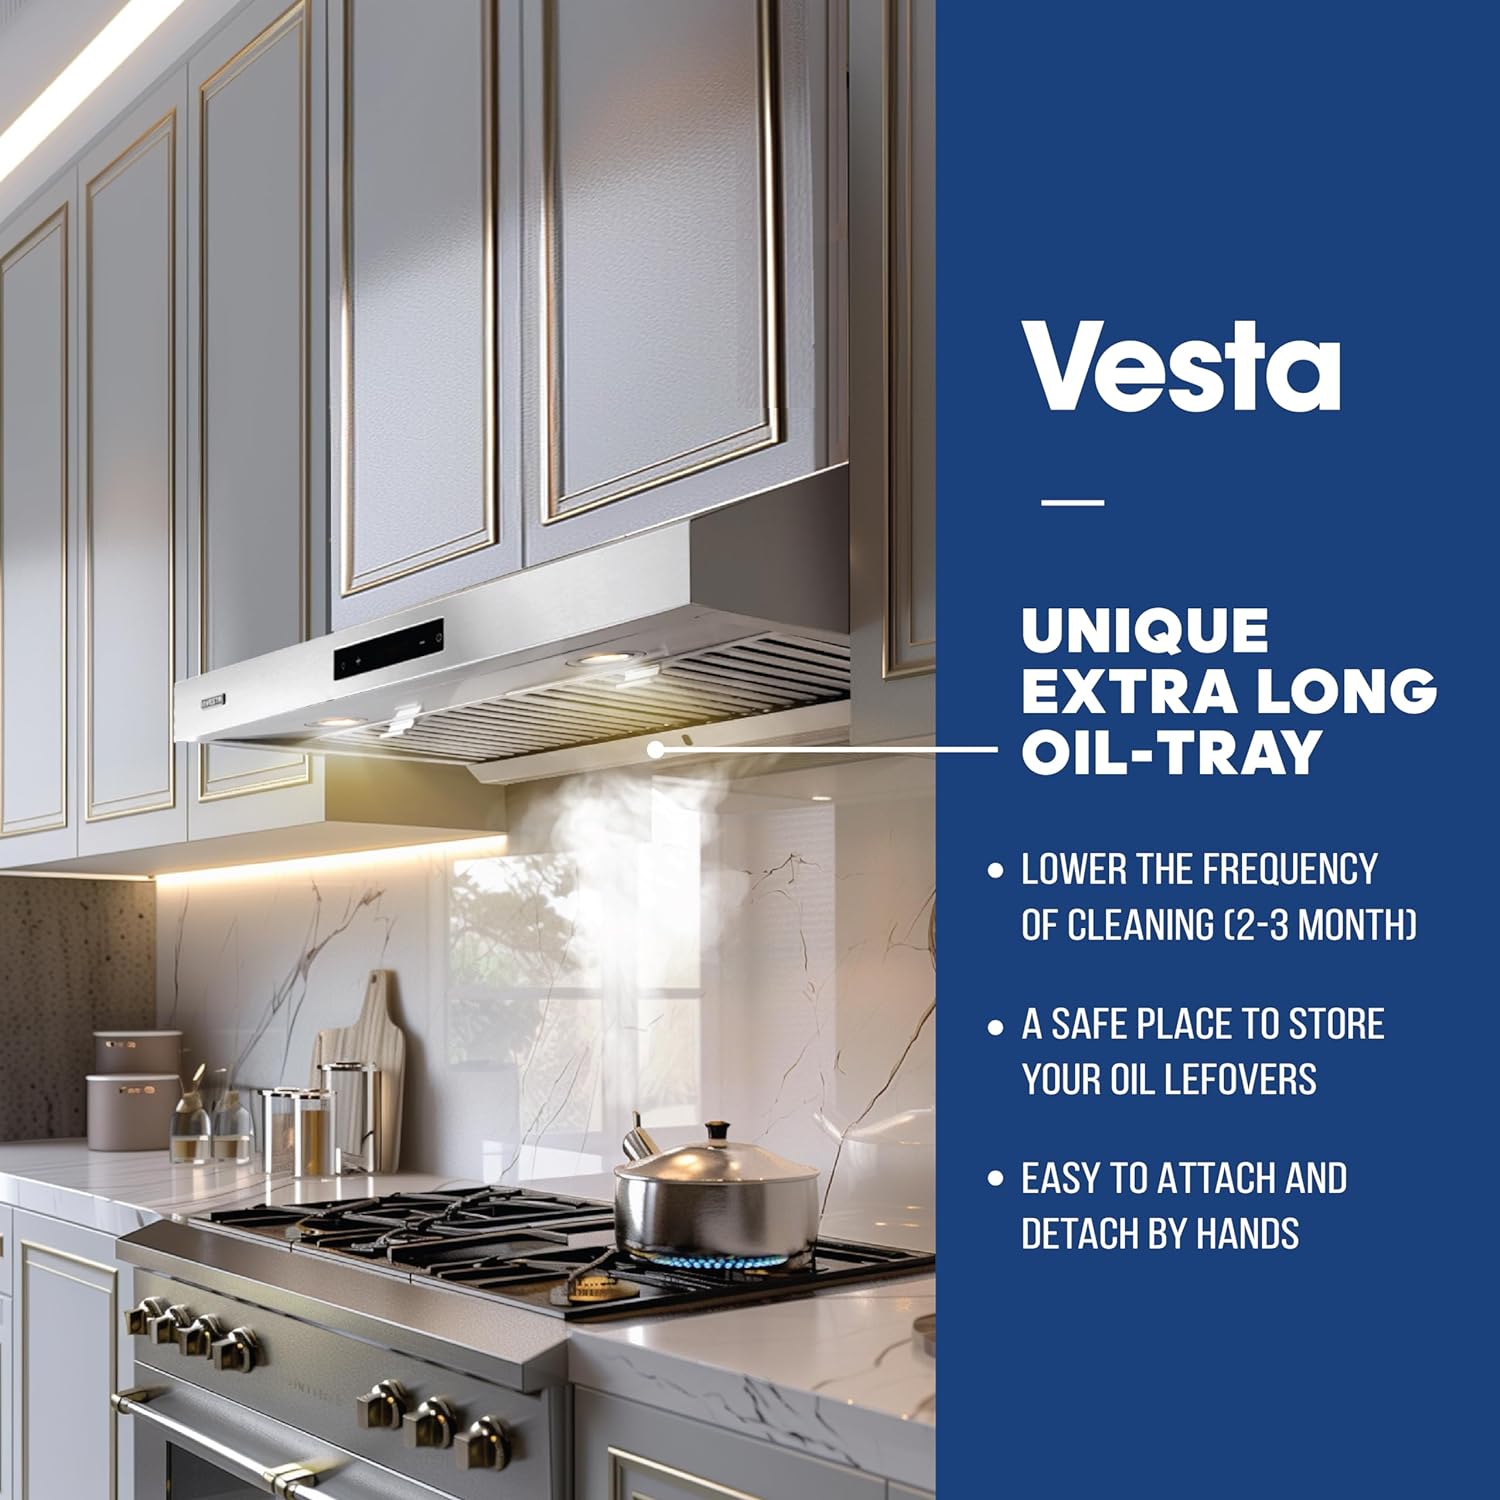 Vesta 860cfm 30 Stainless Steel Under Cabinet Range Hood 6 Speeds with Touch Screen Hard Wire